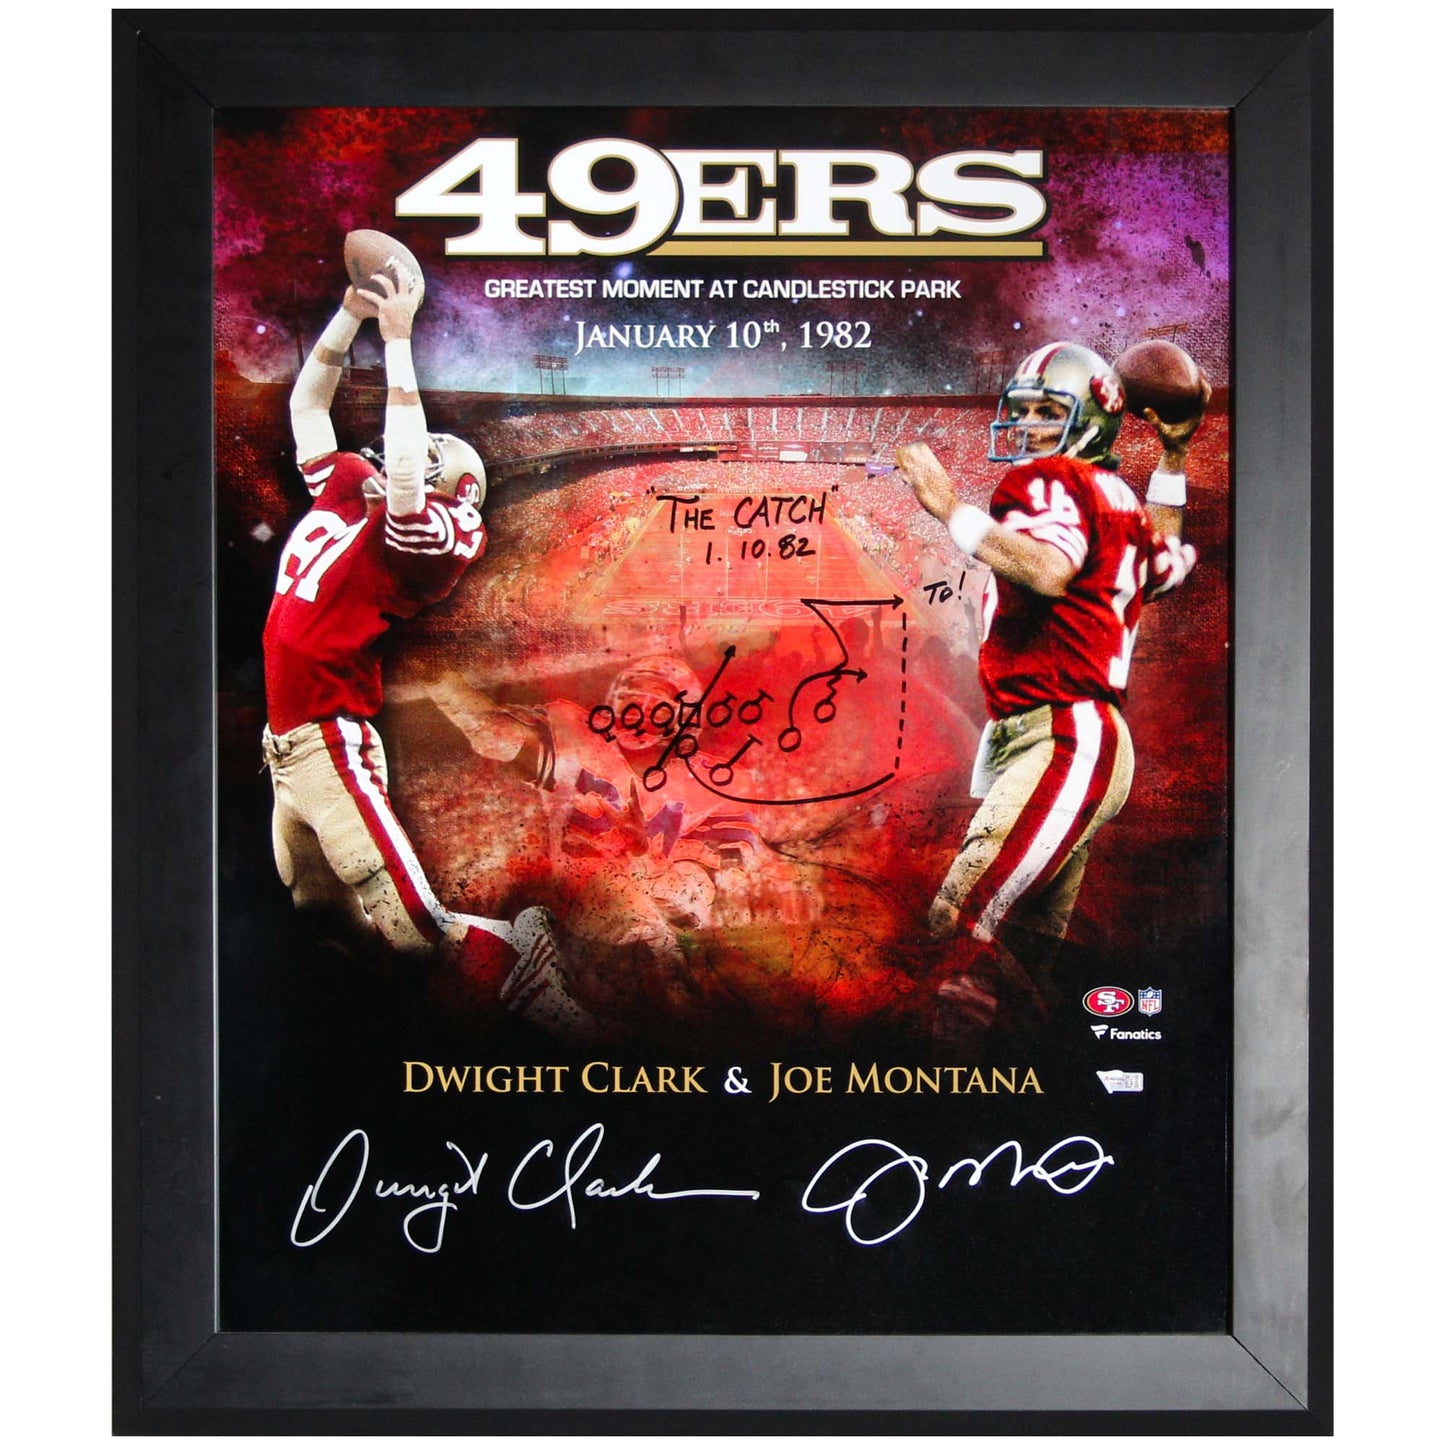 49ers Dwight Clark & Joe Montana "The Catch" Signed Memorabilia